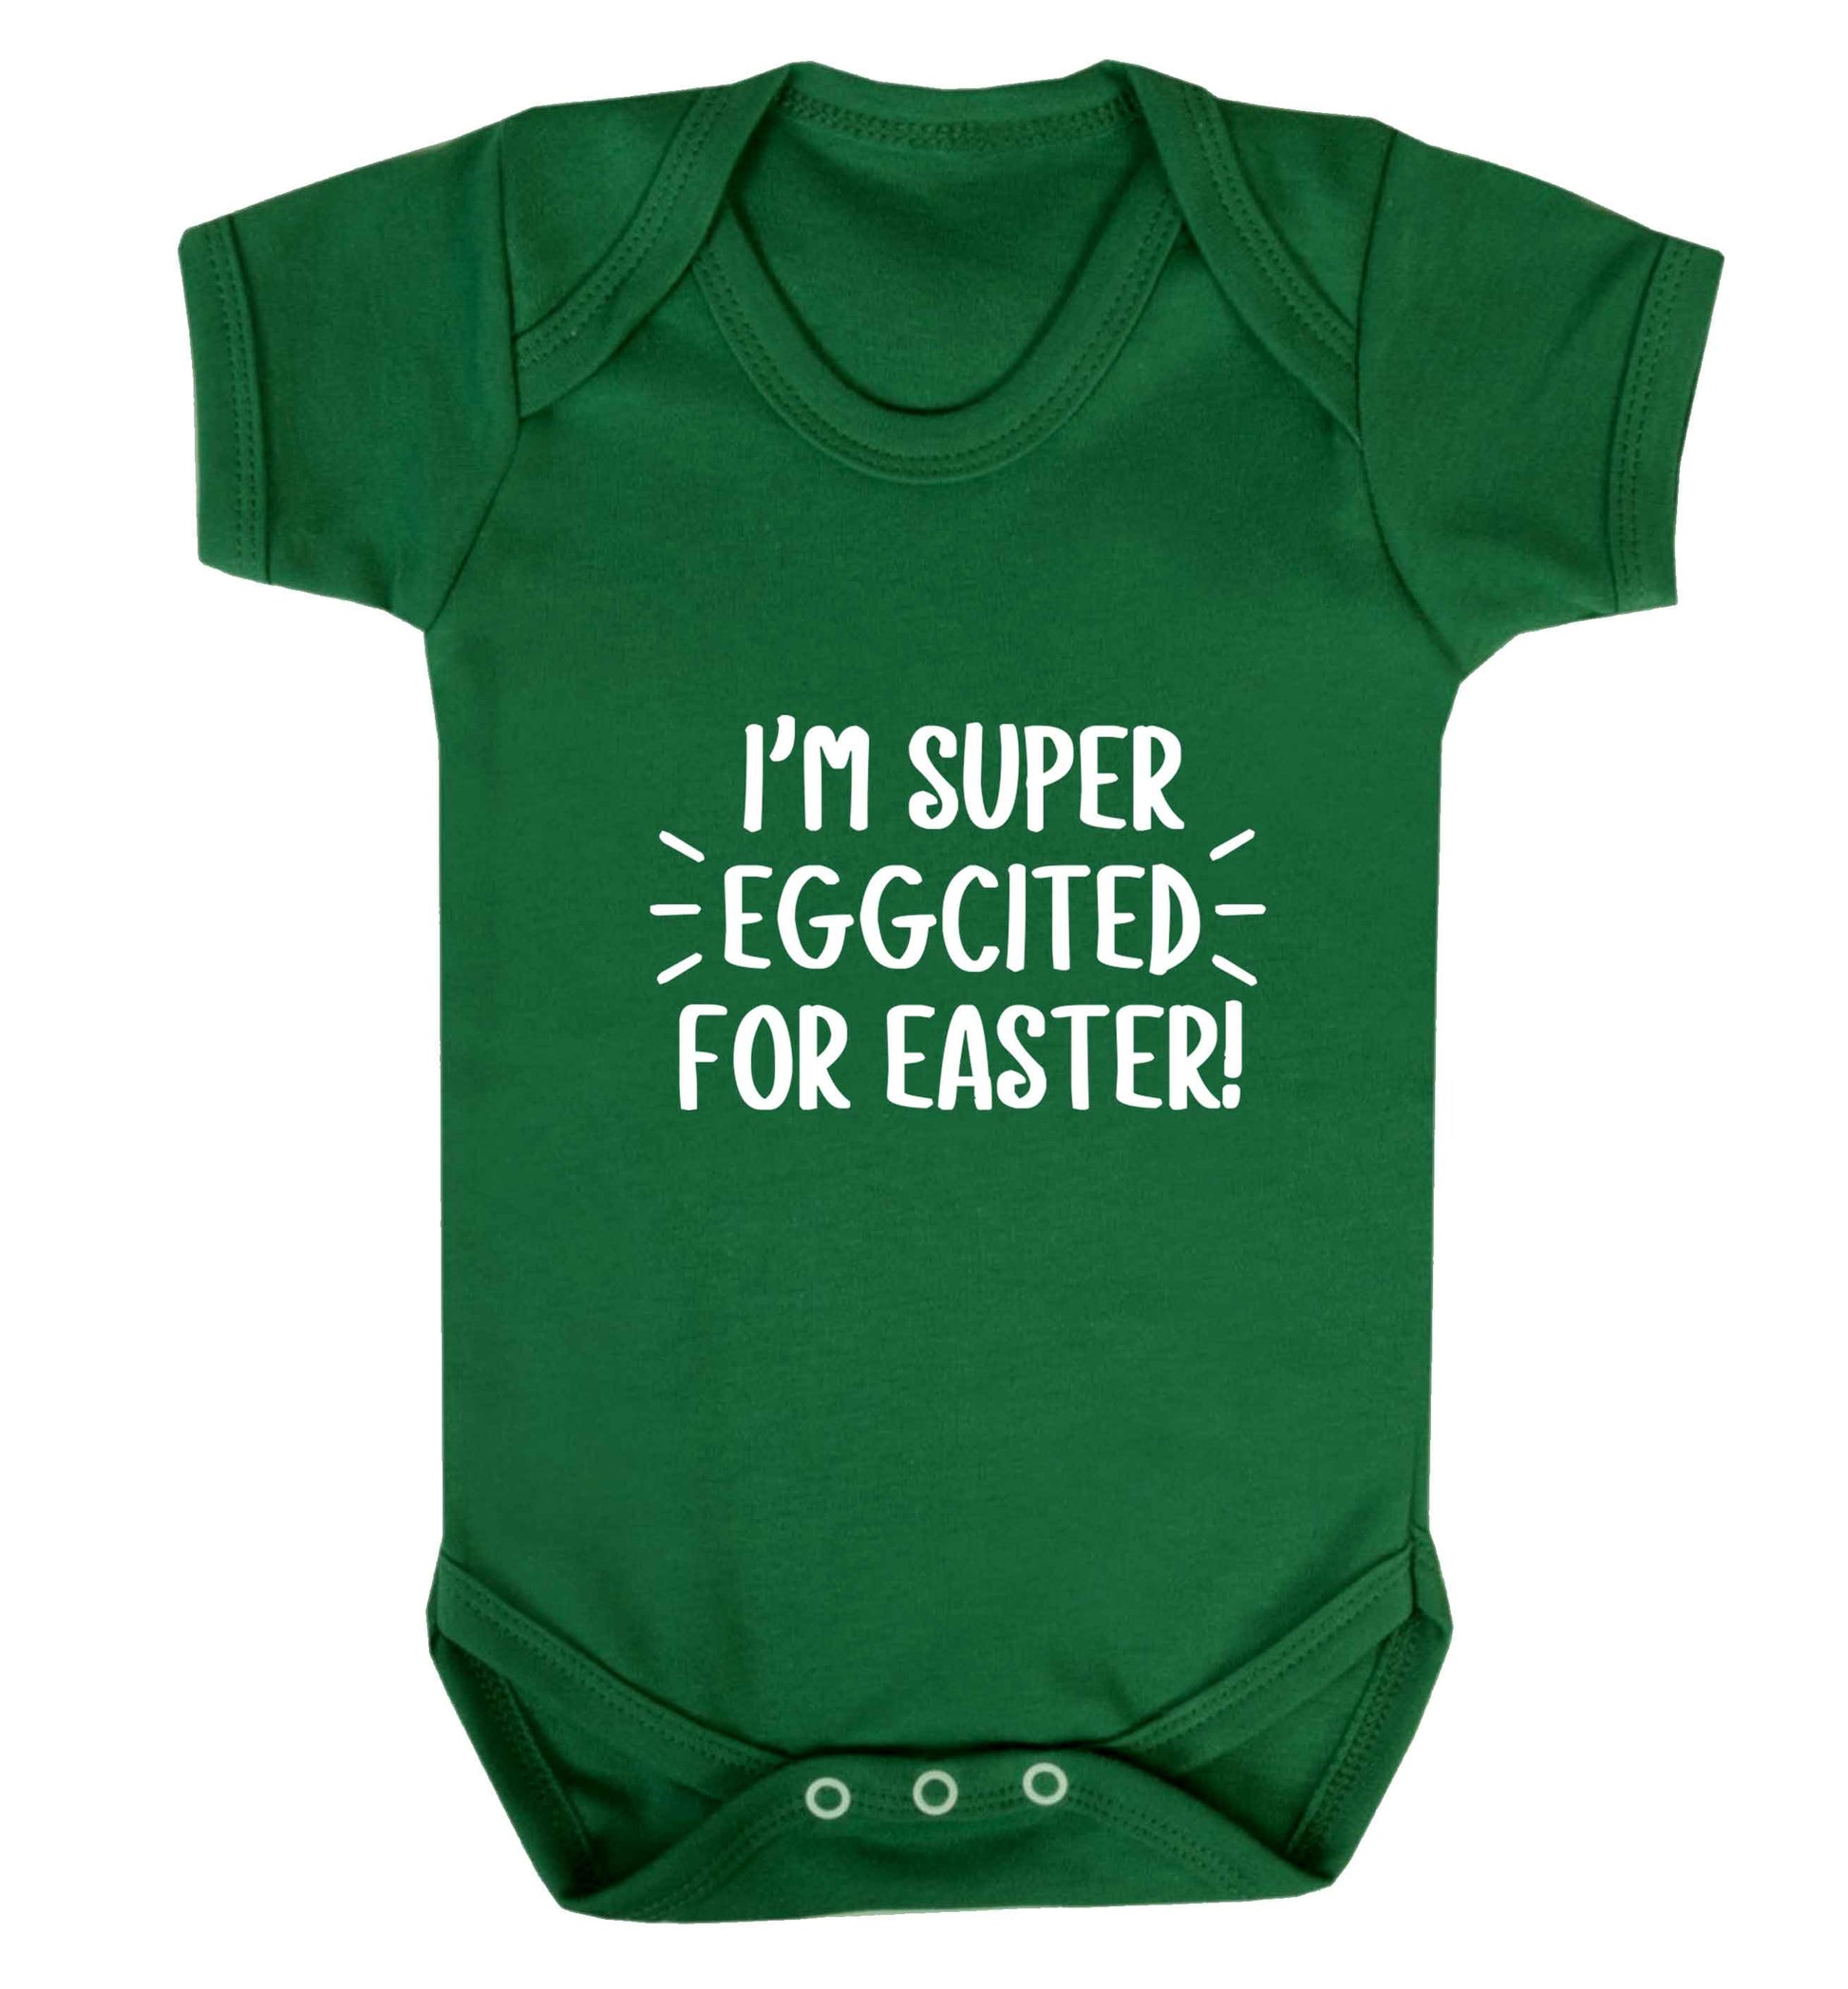 I'm super eggcited for Easter baby vest green 18-24 months